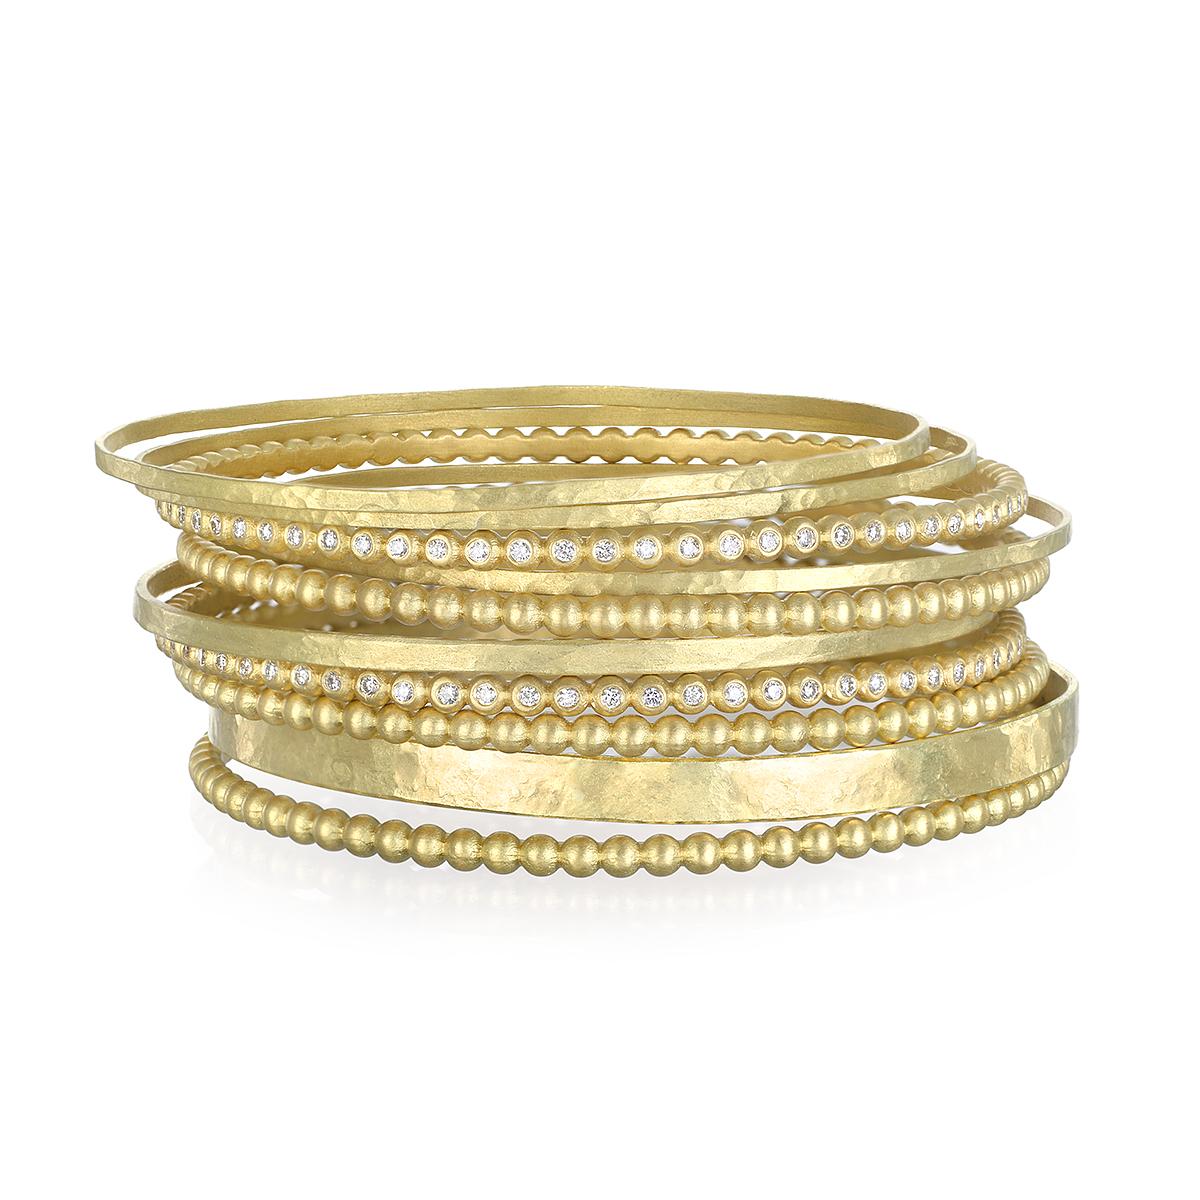 Le bracelet bangle en perles de granulation, signature de Faye Kim, en or massif 18 carats*, est conçu pour être porté seul ou superposé pour un look ultime.
Magnifiquement fabriqué à la main et avec une finition mate. 

Les bracelets sont vendus